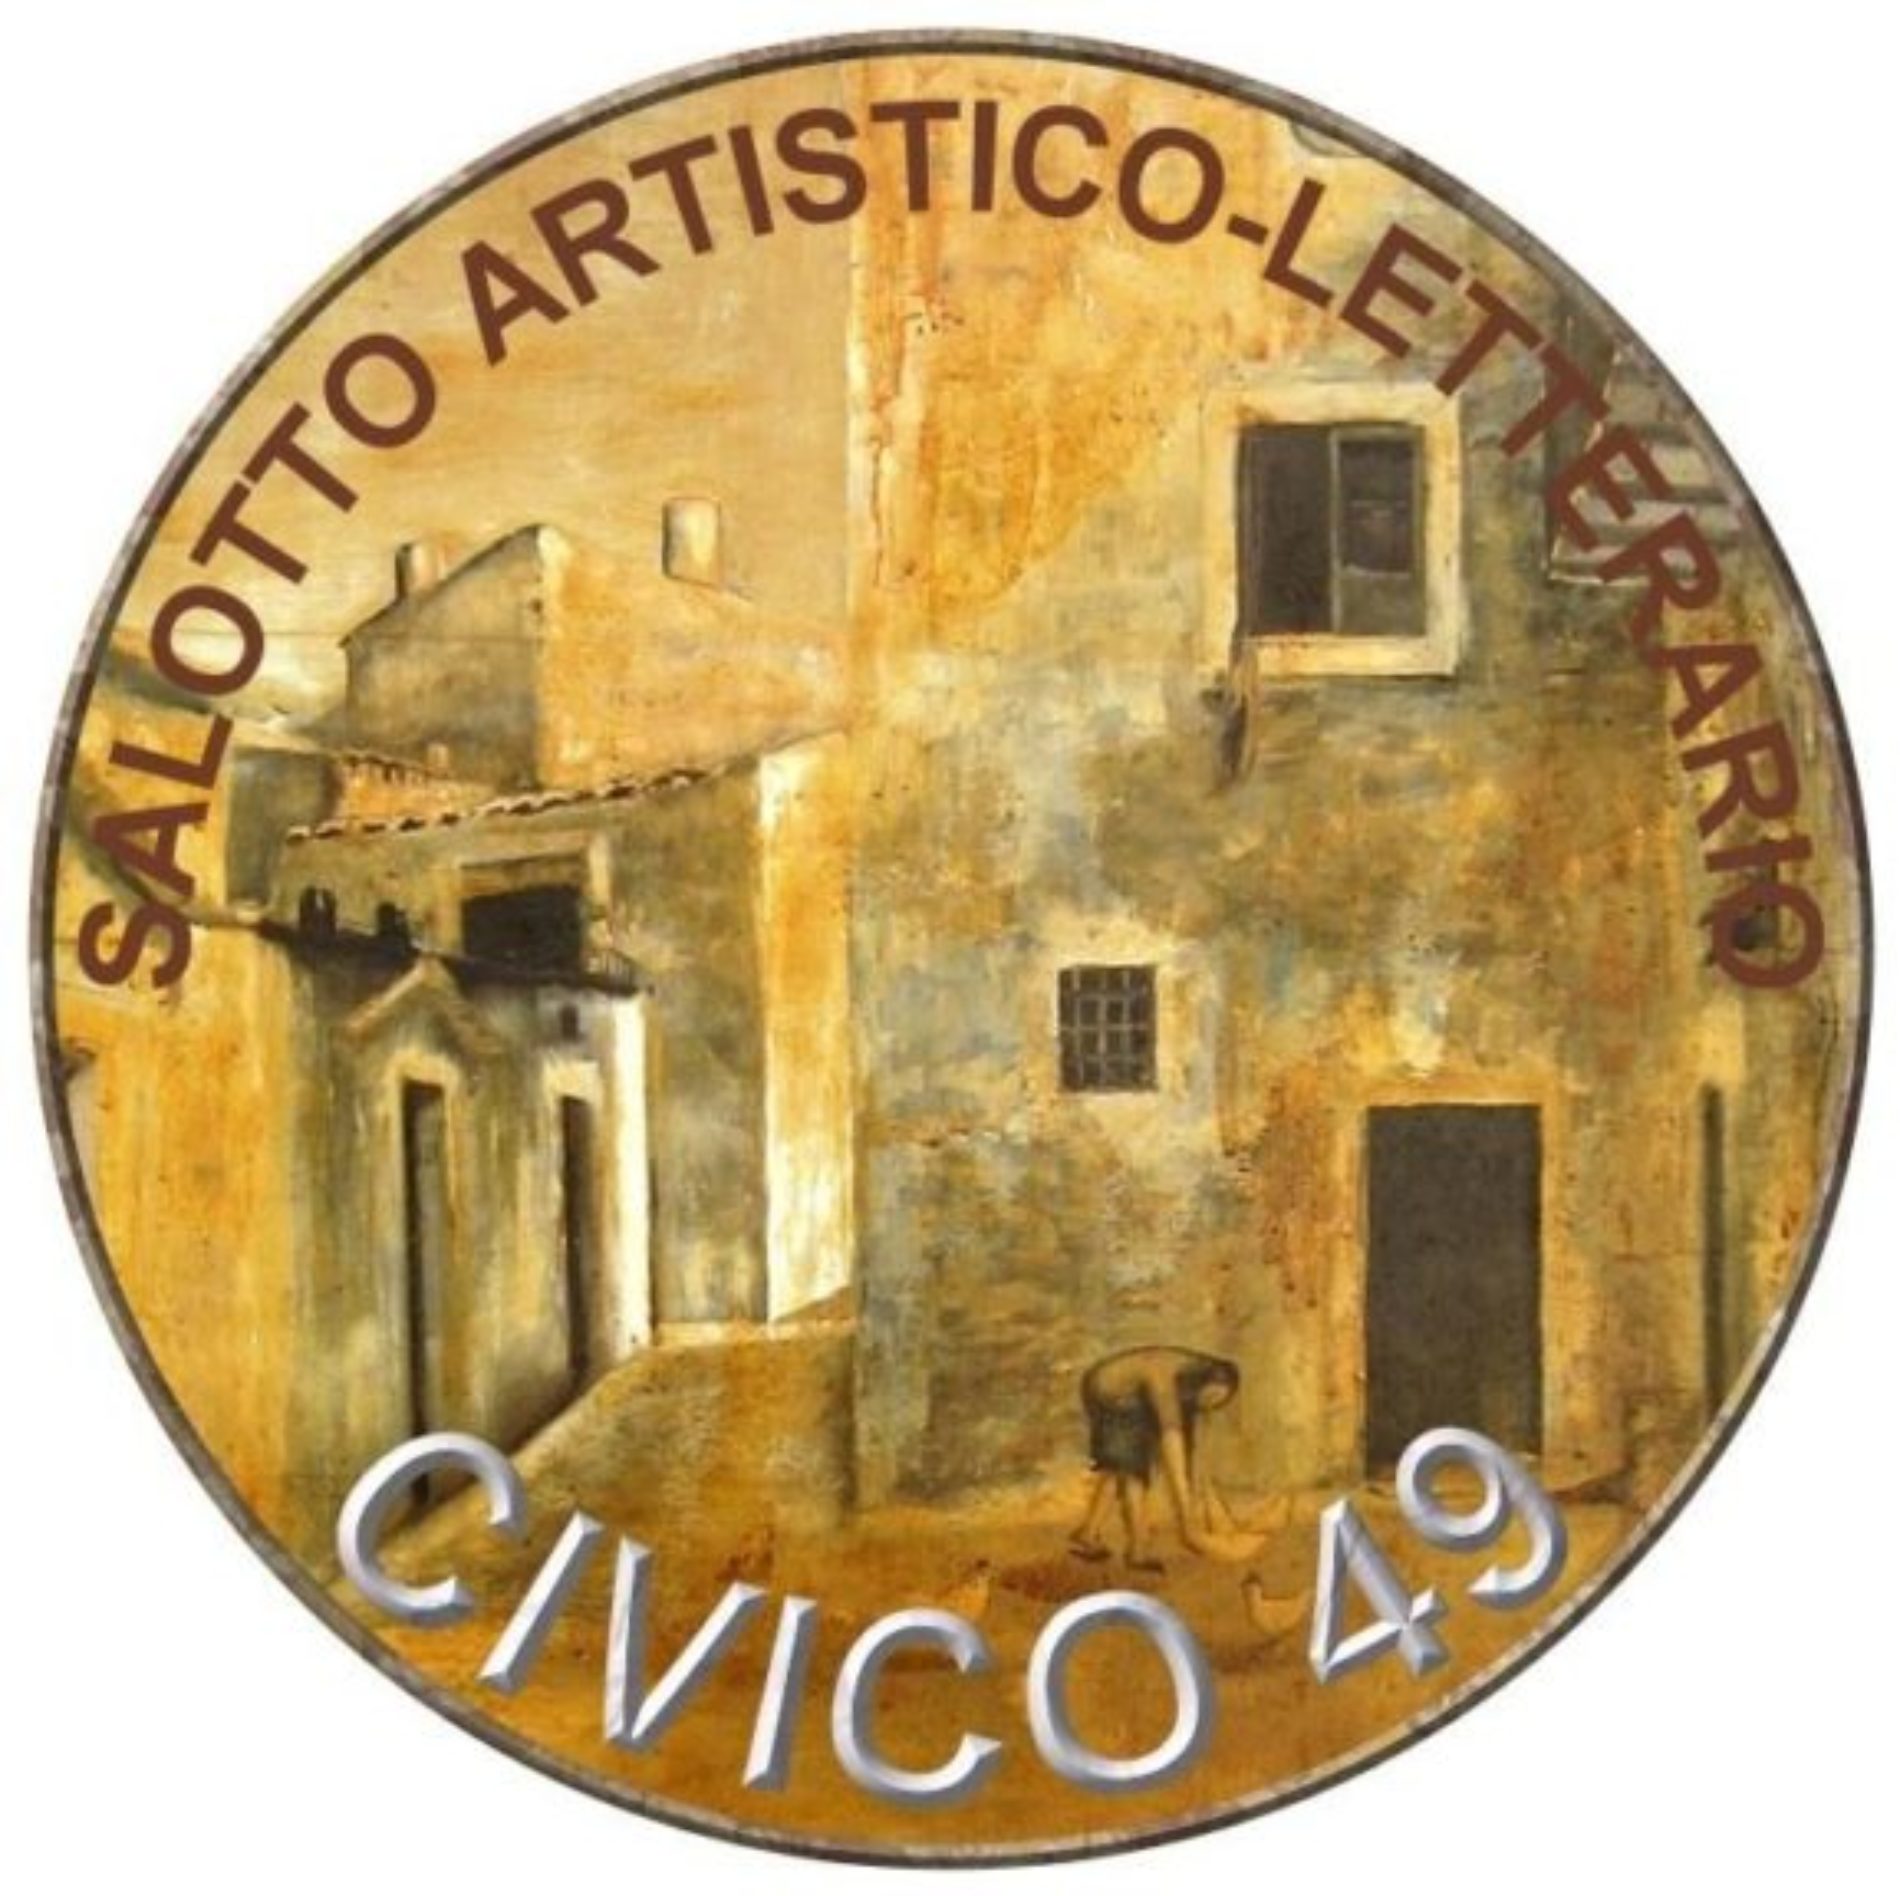 Il Salotto Artistico-Letterario “CIVICO 49” ricorda la figura di FRANCO BALSAMO